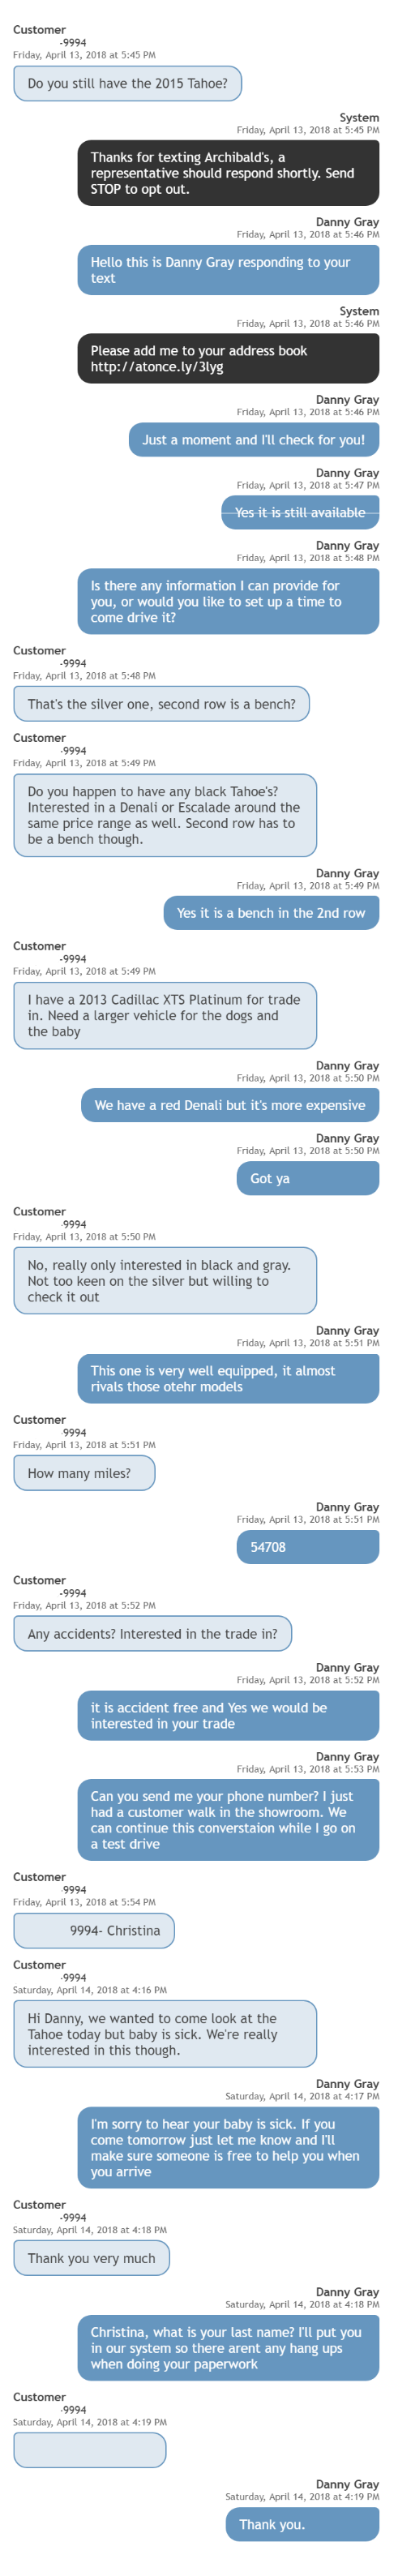 CustomerConversation